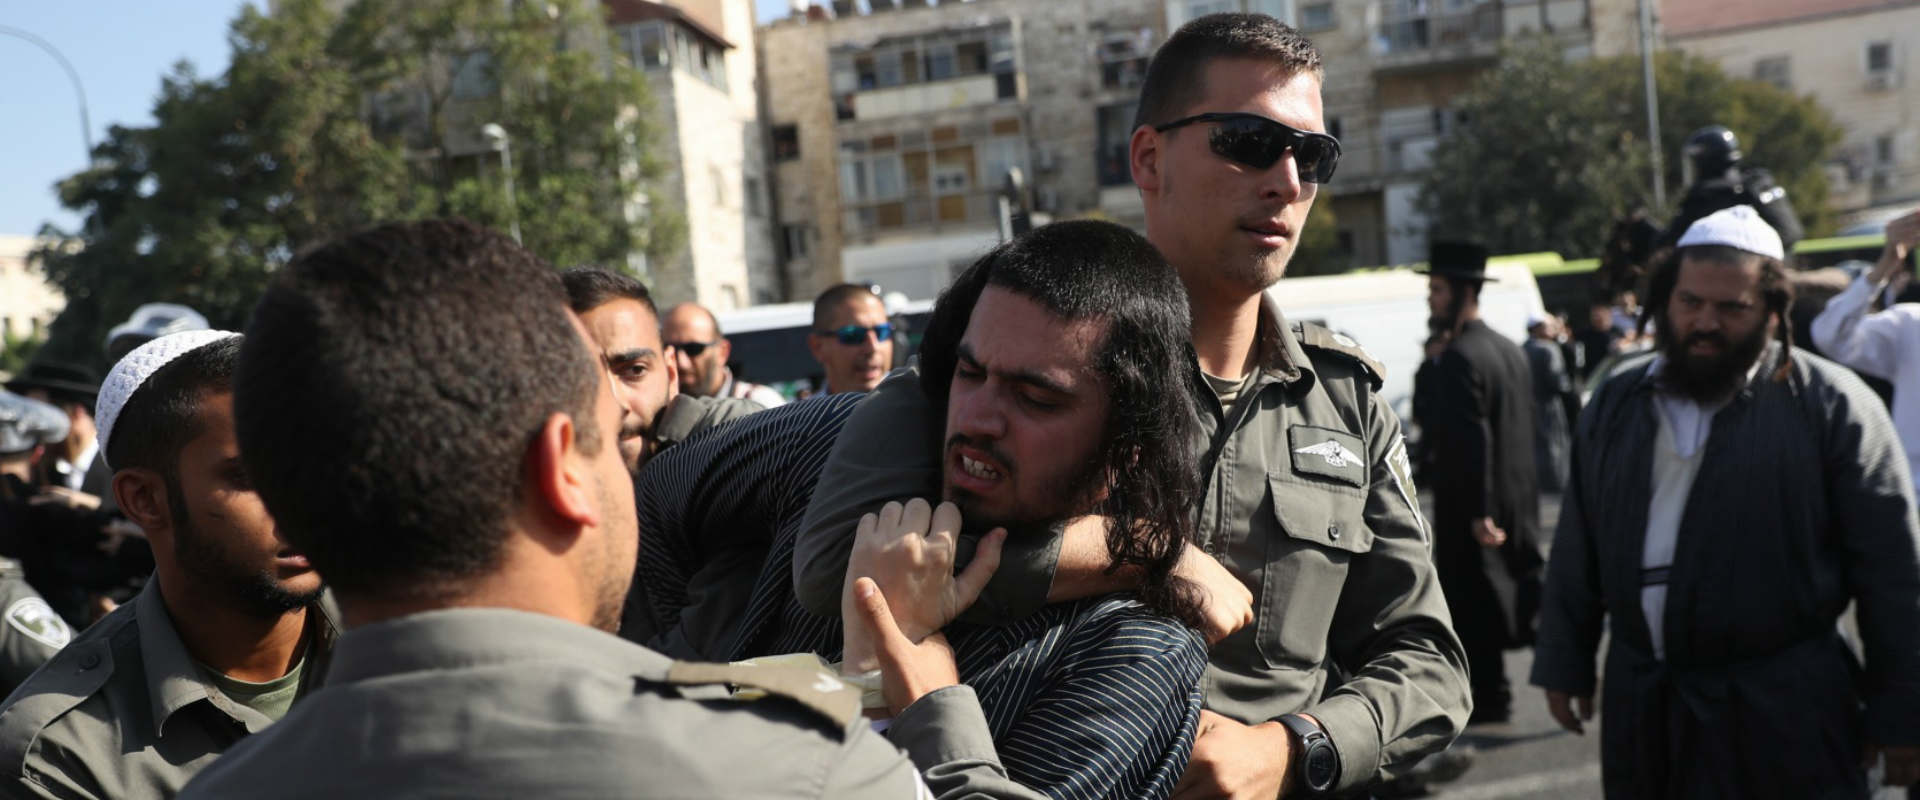 שוטרים גוררים חרדי בהפגנה בירושלים, היום